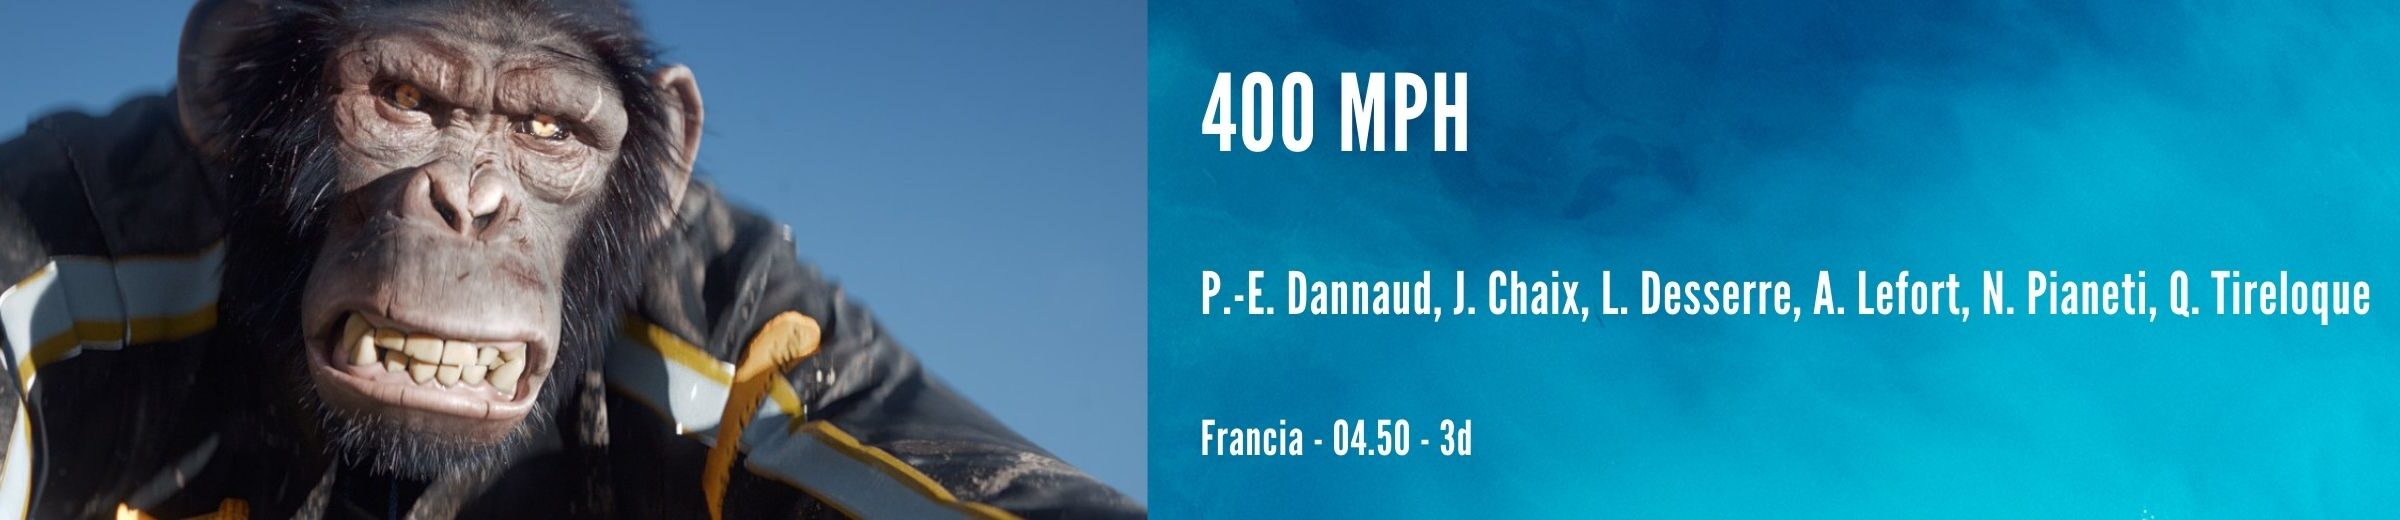 400 mph